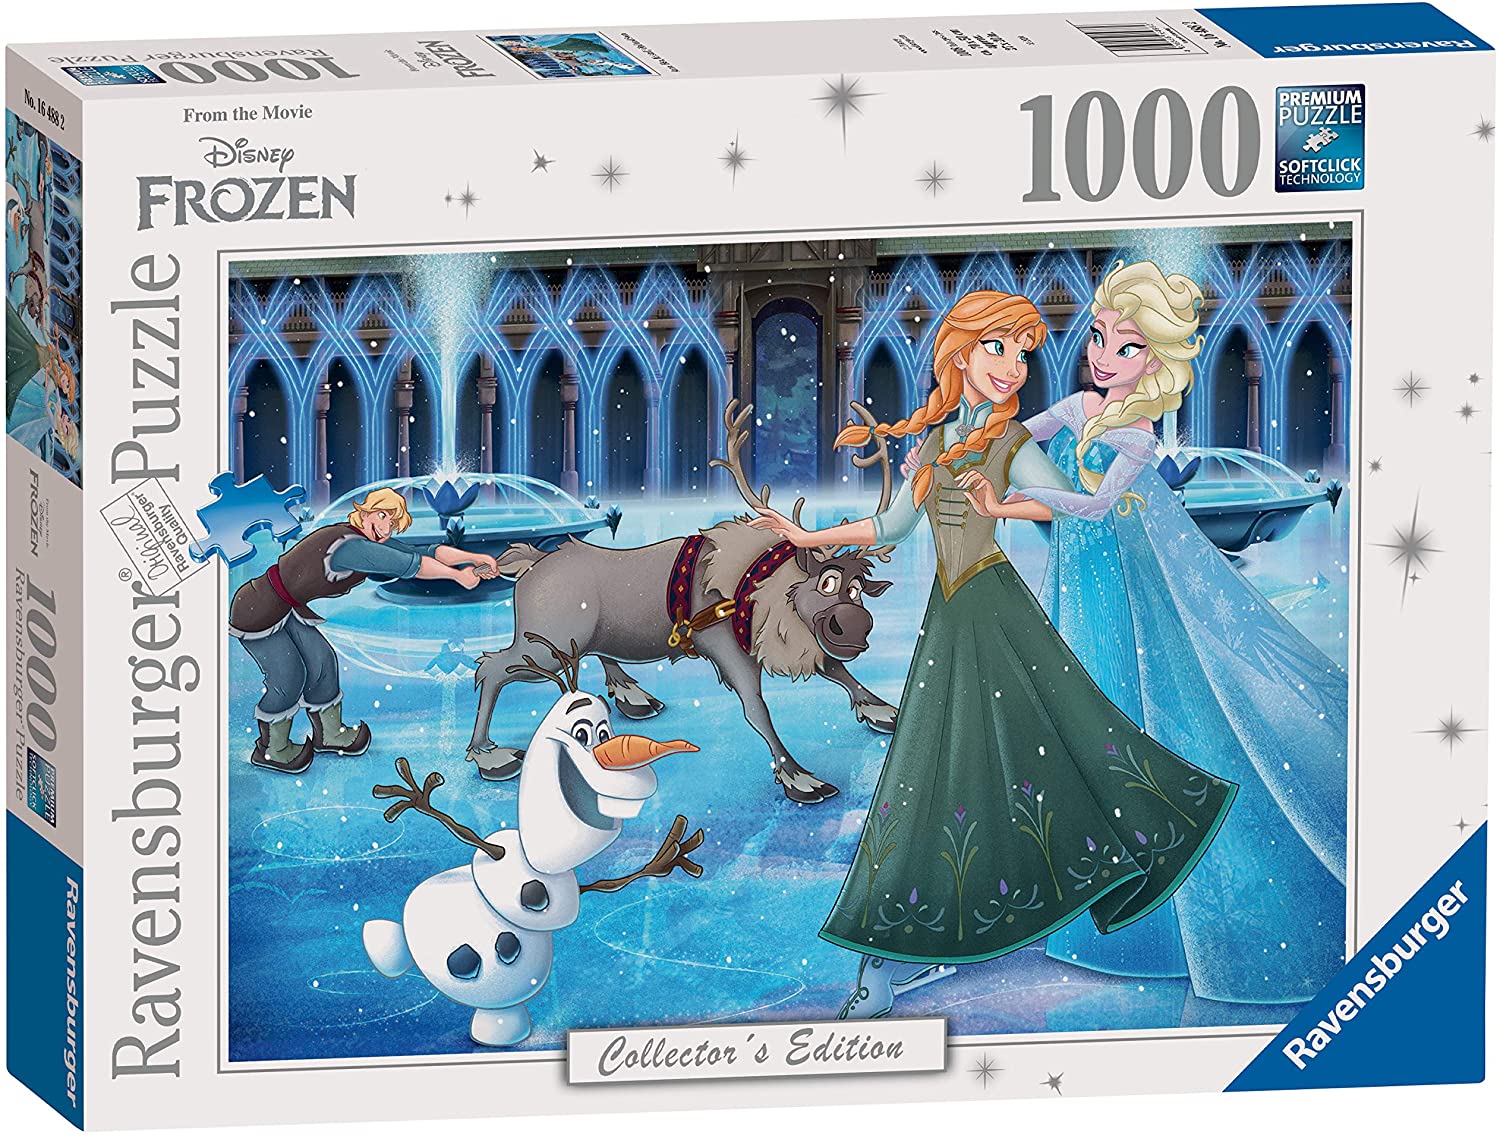 Frozen 1000 Piece